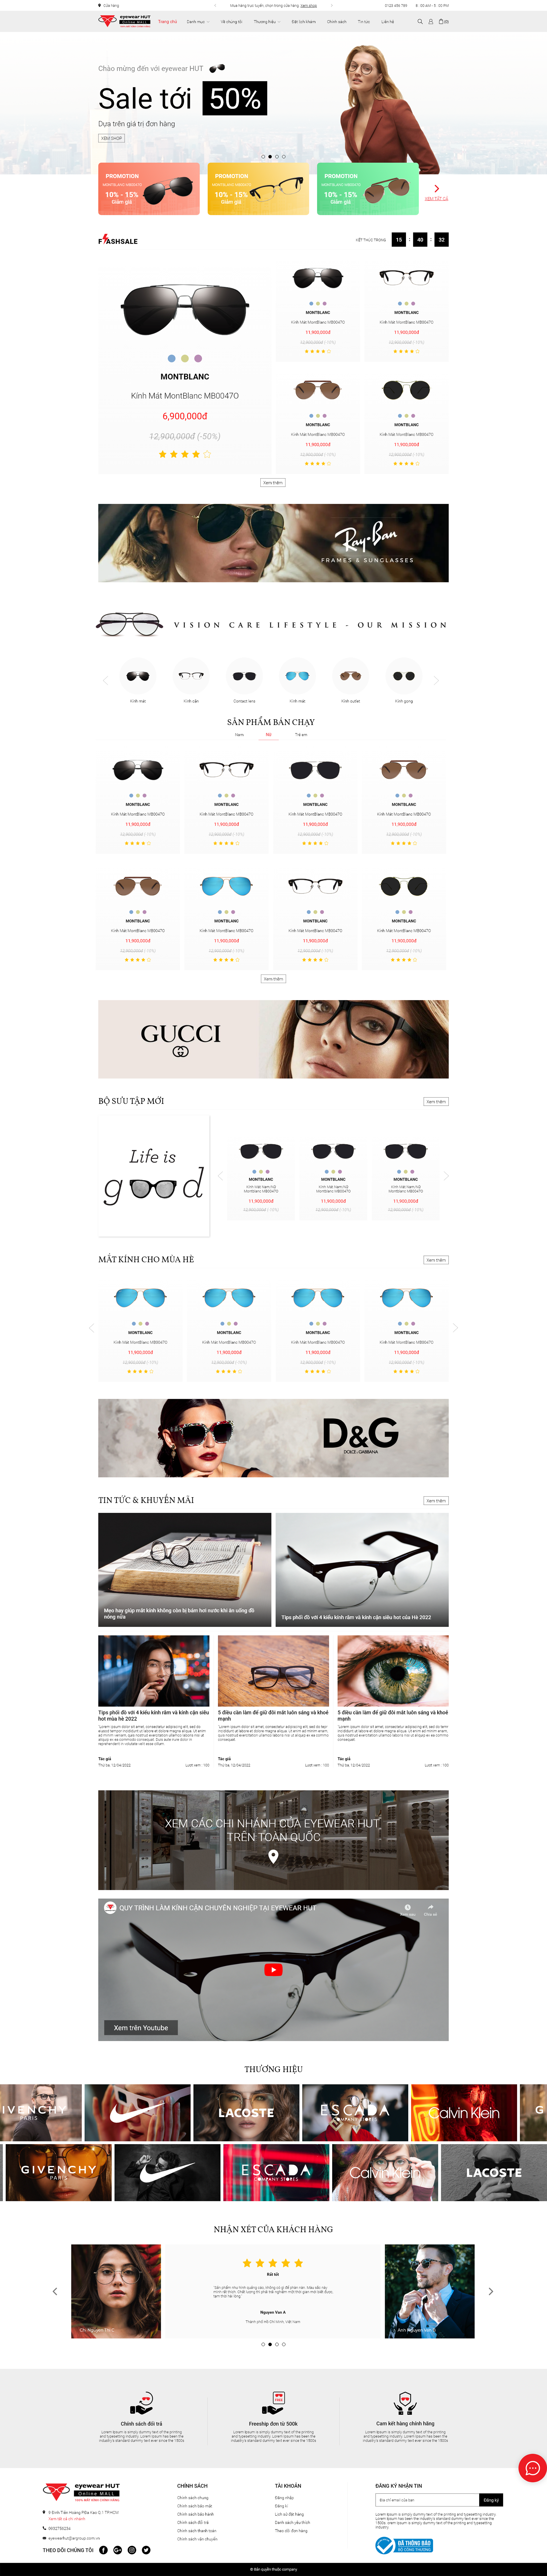 Dự án Eyewearhut – Chuỗi mắt kính thời trang cao cấp Eyewearhut